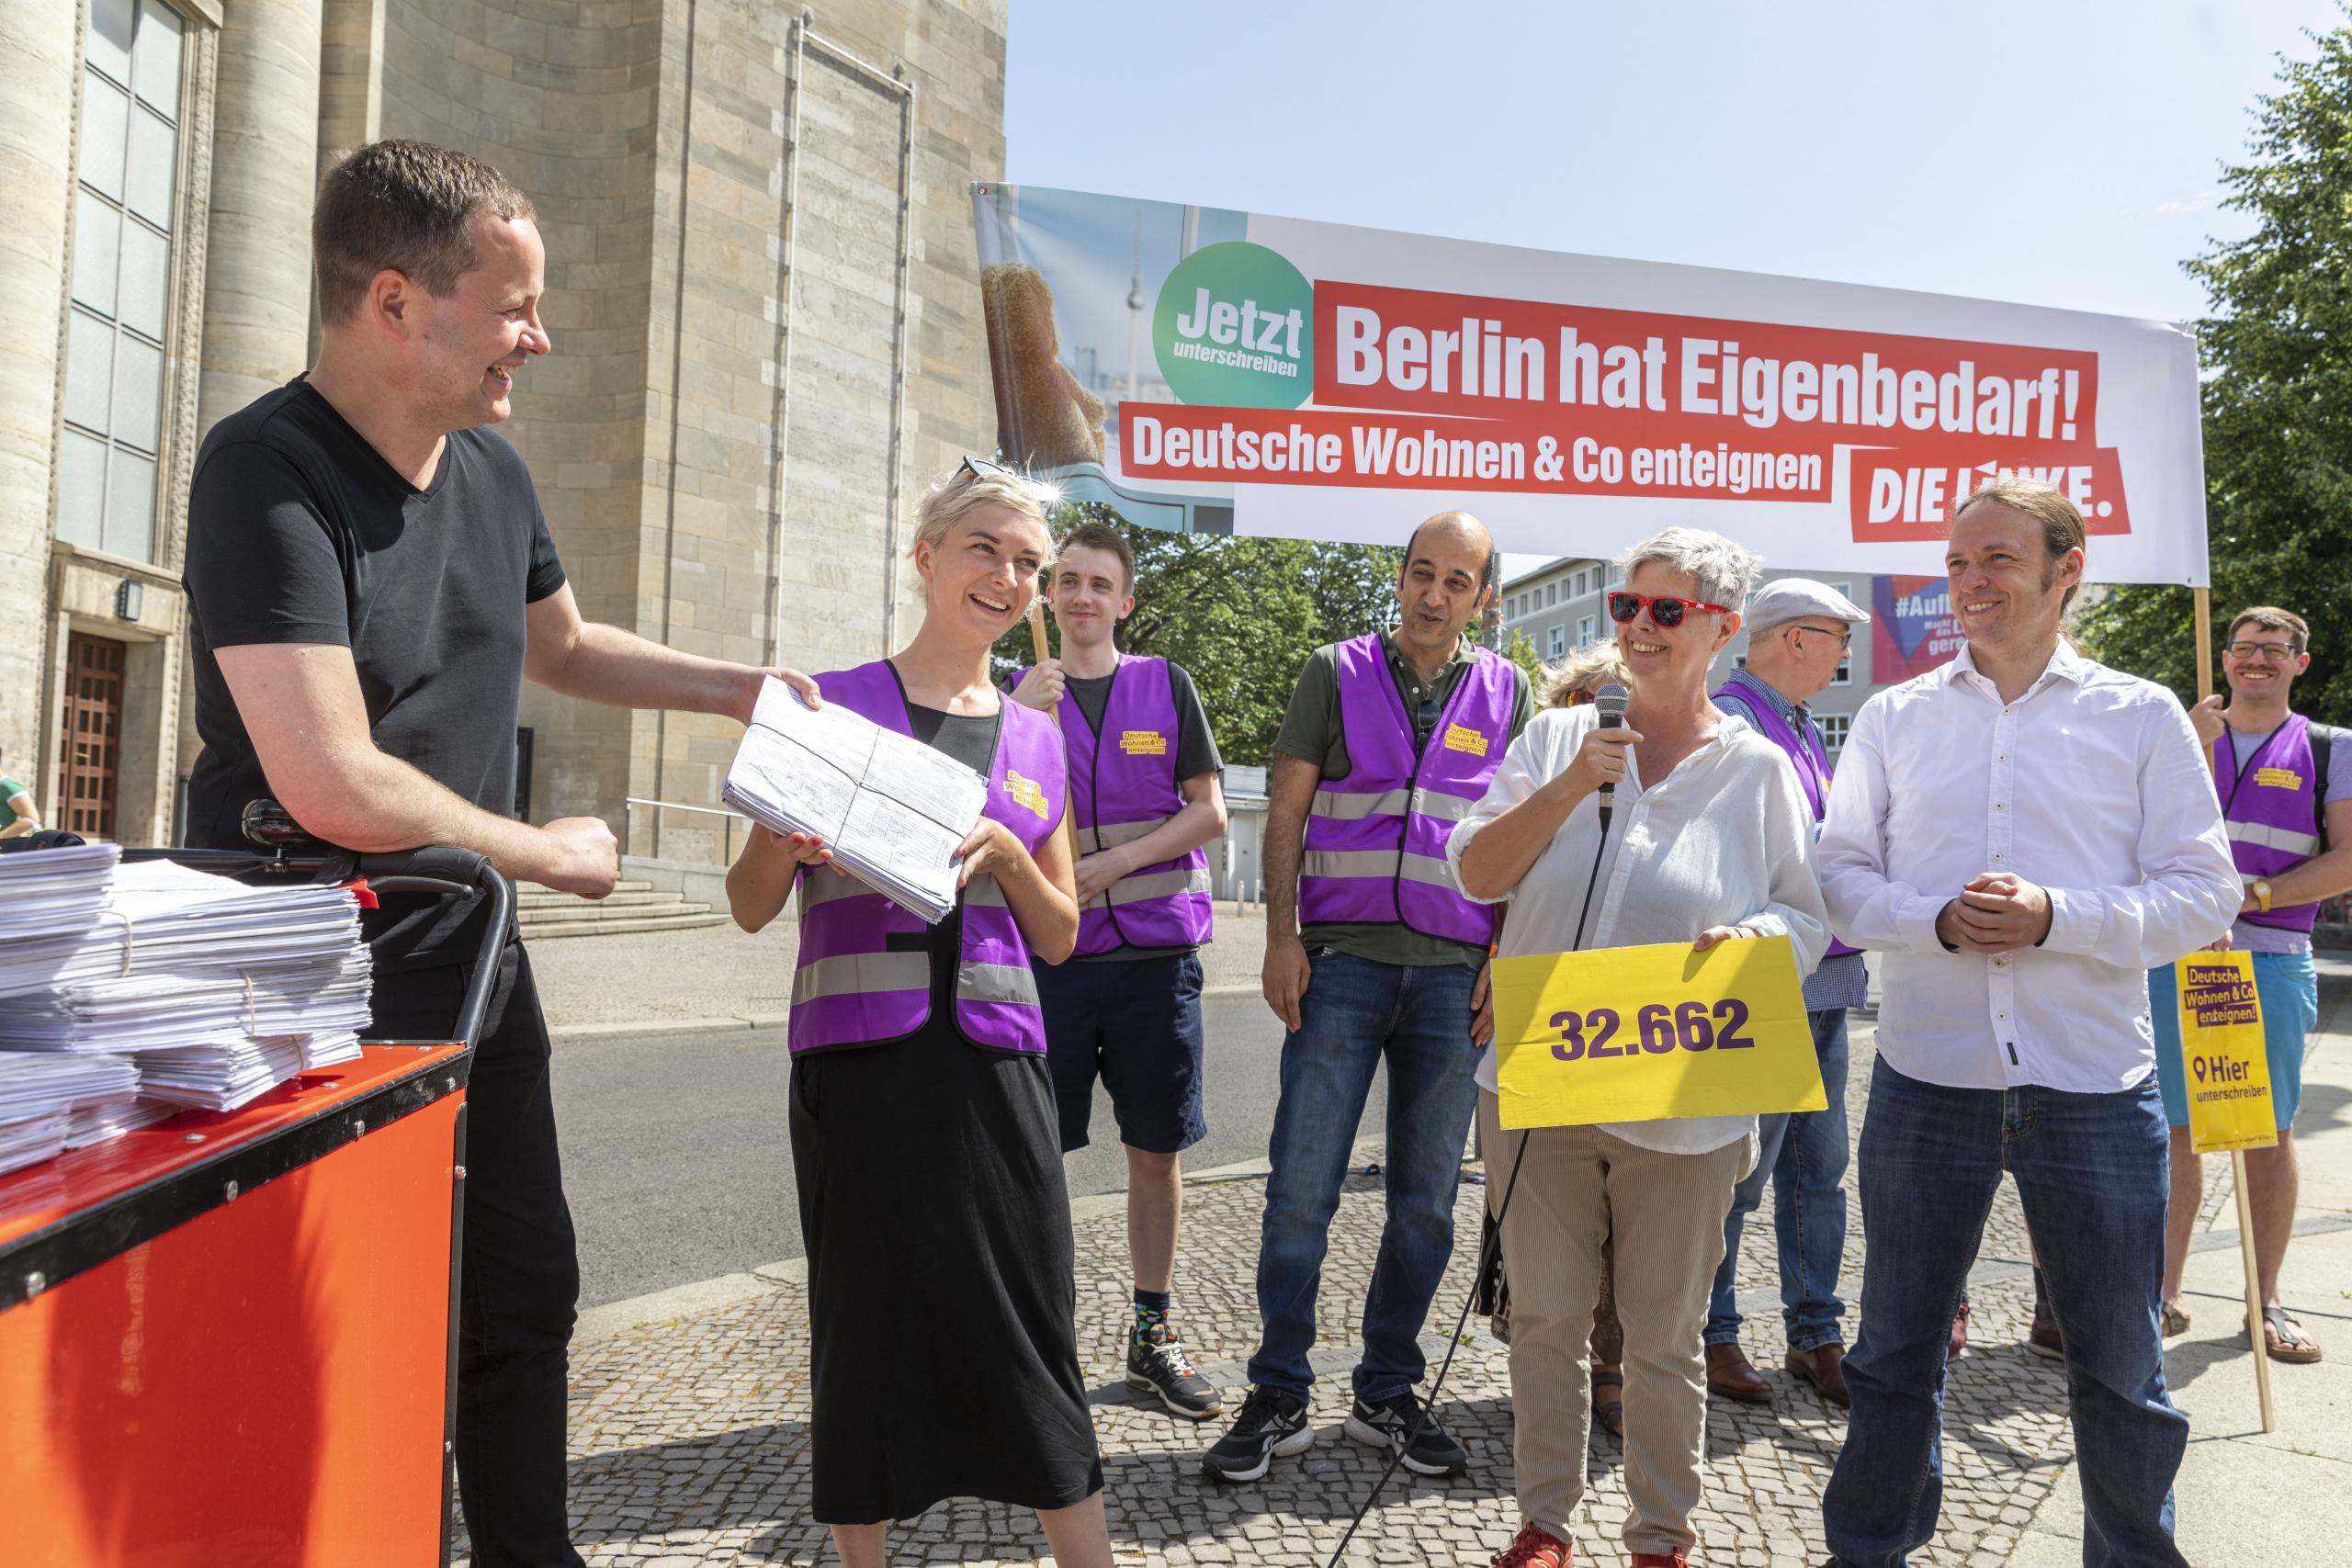 Klaus Lederer (DIE LINKE) bei der öffentlichen Übergabe von Unterschriften an die Kampagne Deutsche Wohnen und Co enteignen, Berlin, 21. Juni 2021.